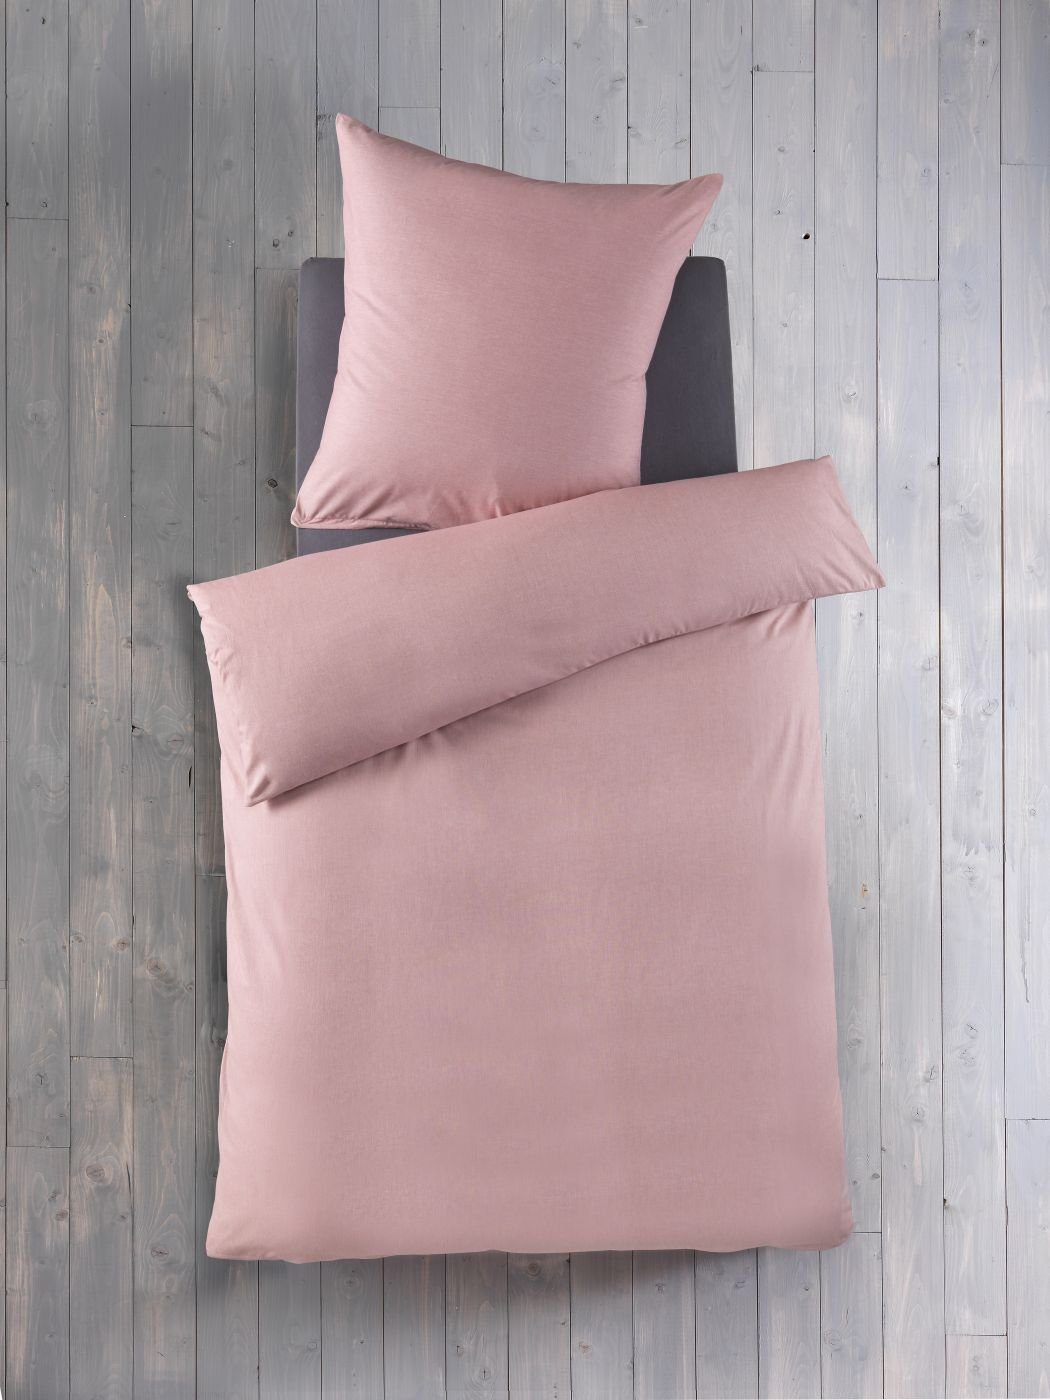 Bettwäsche Chambray 135 cm x 200 cm rosa, Optidream, Baumolle, 2 teilig, Bettbezug Kopfkissenbezug Set kuschelig weich hochwertig